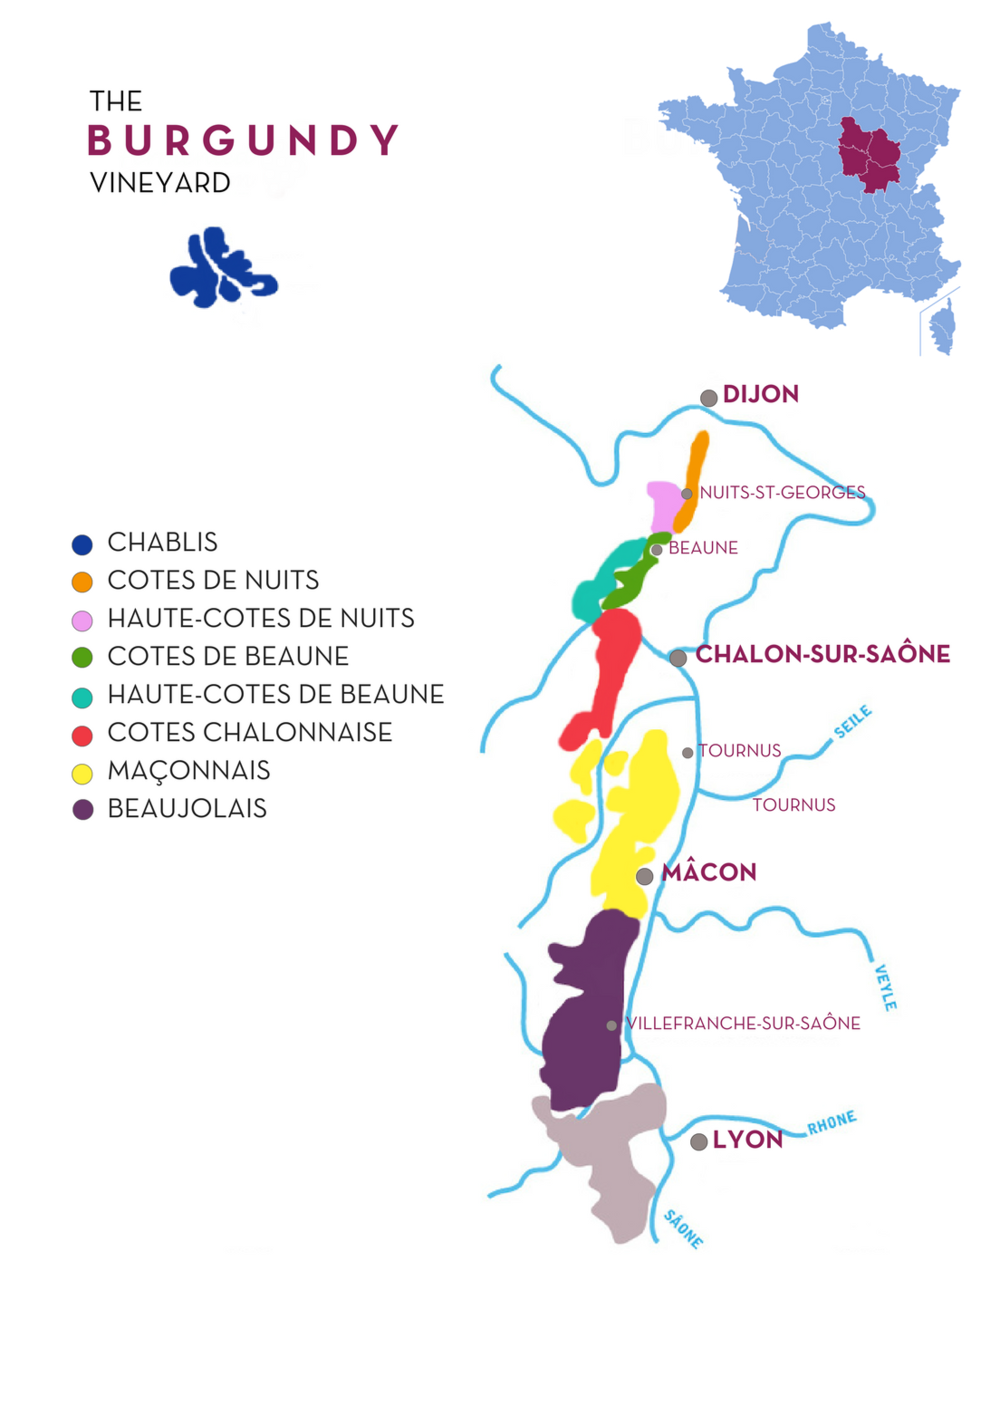 Ubytovna mluvčí technický burgundy wine region map kudrnatý balkón ...